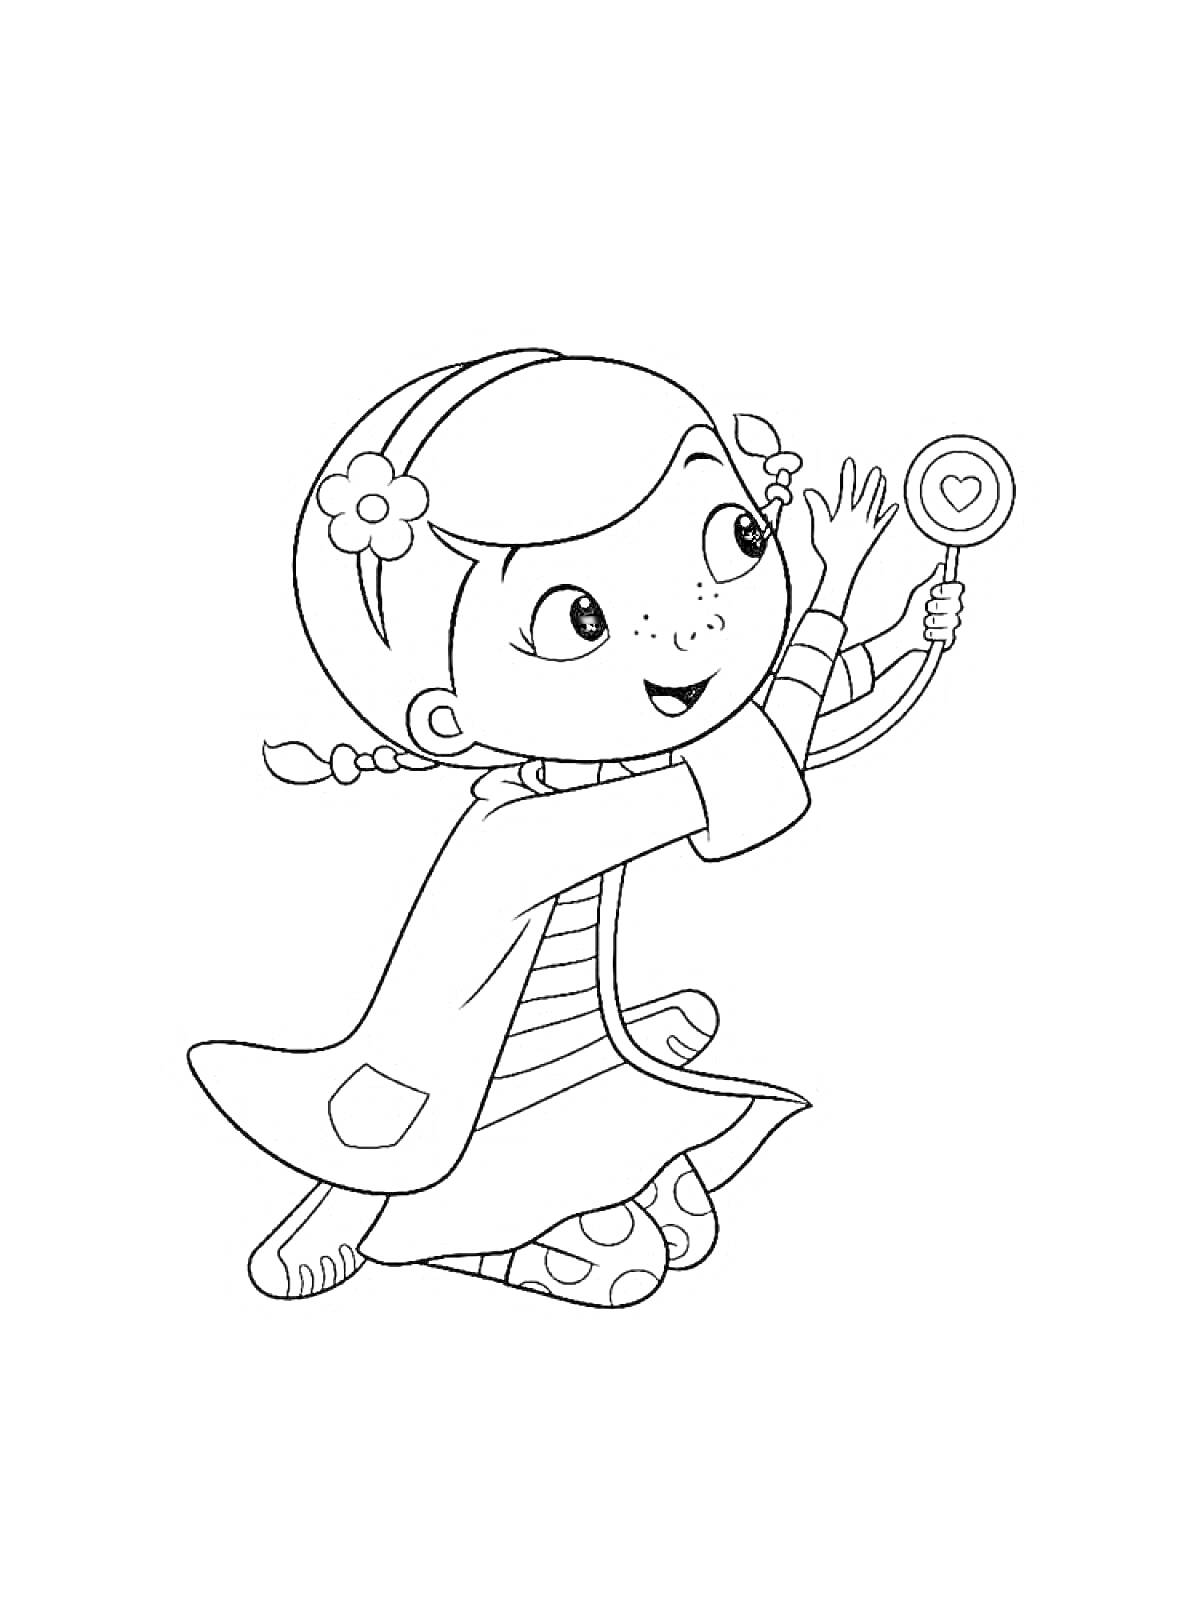 Раскраска Девочка с косичками с цветами, держащая стетоскоп с сердечком, в халате и полосатом платье, на коленях.